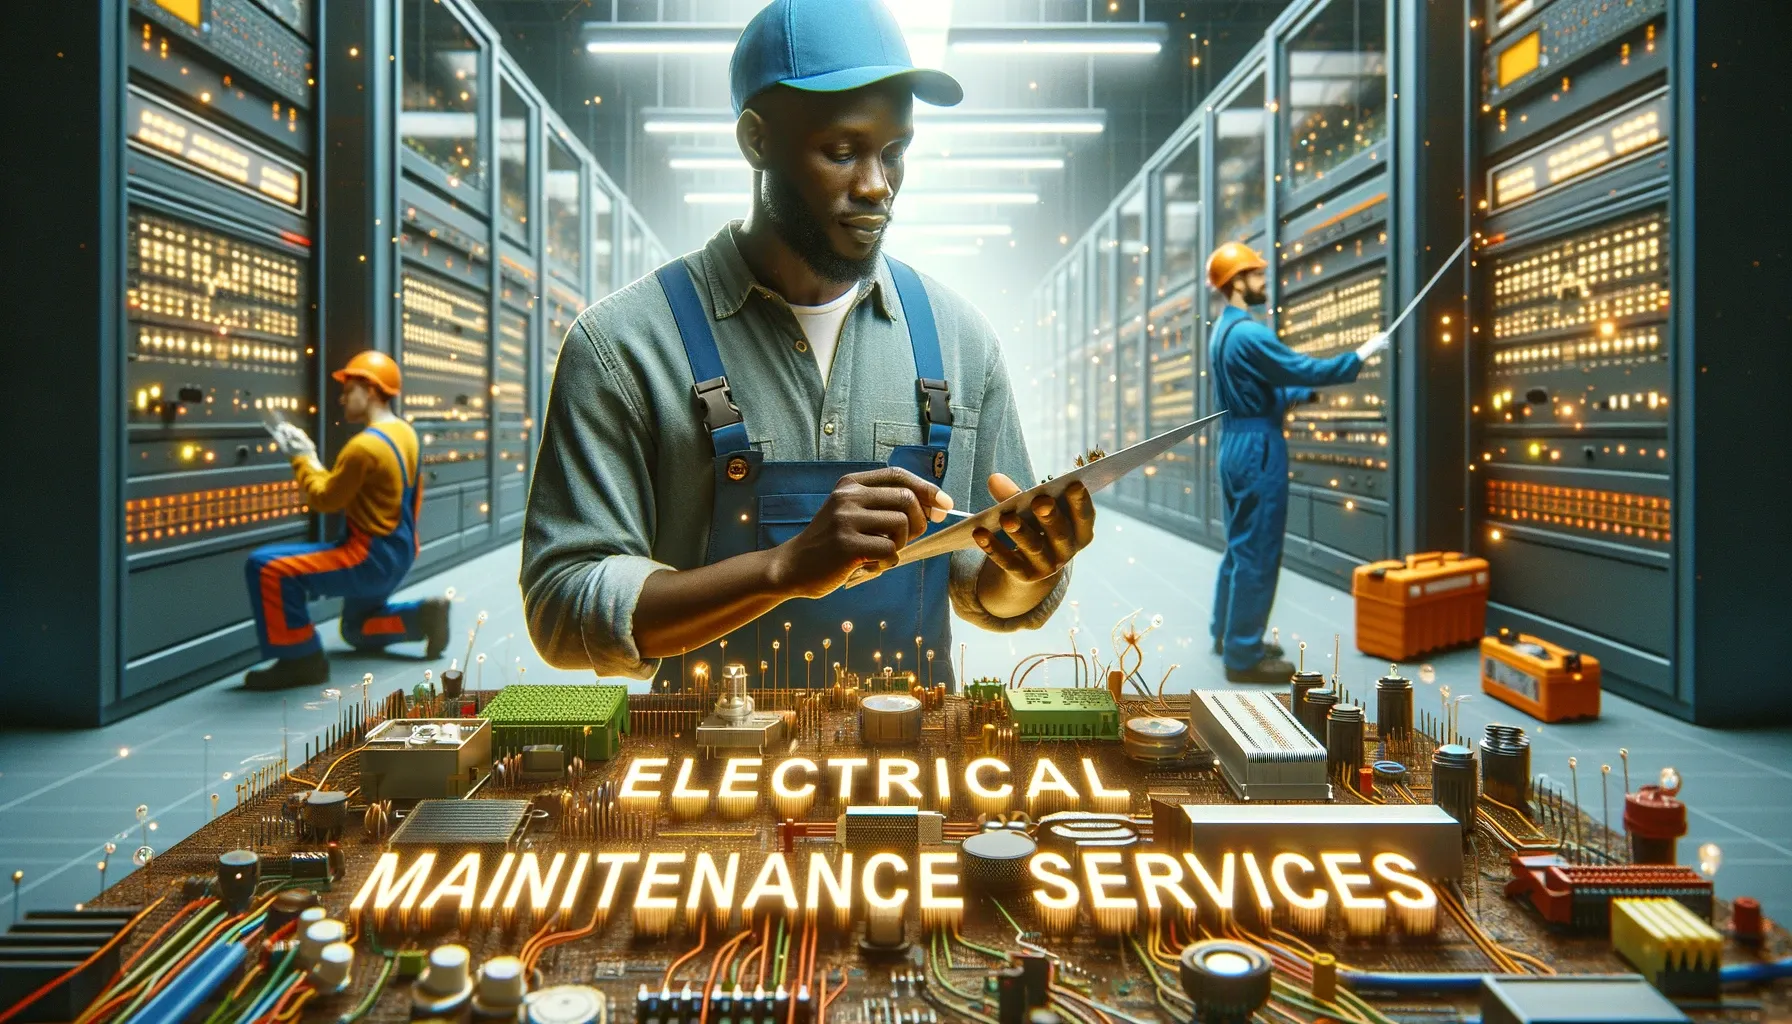 Maintenance Services